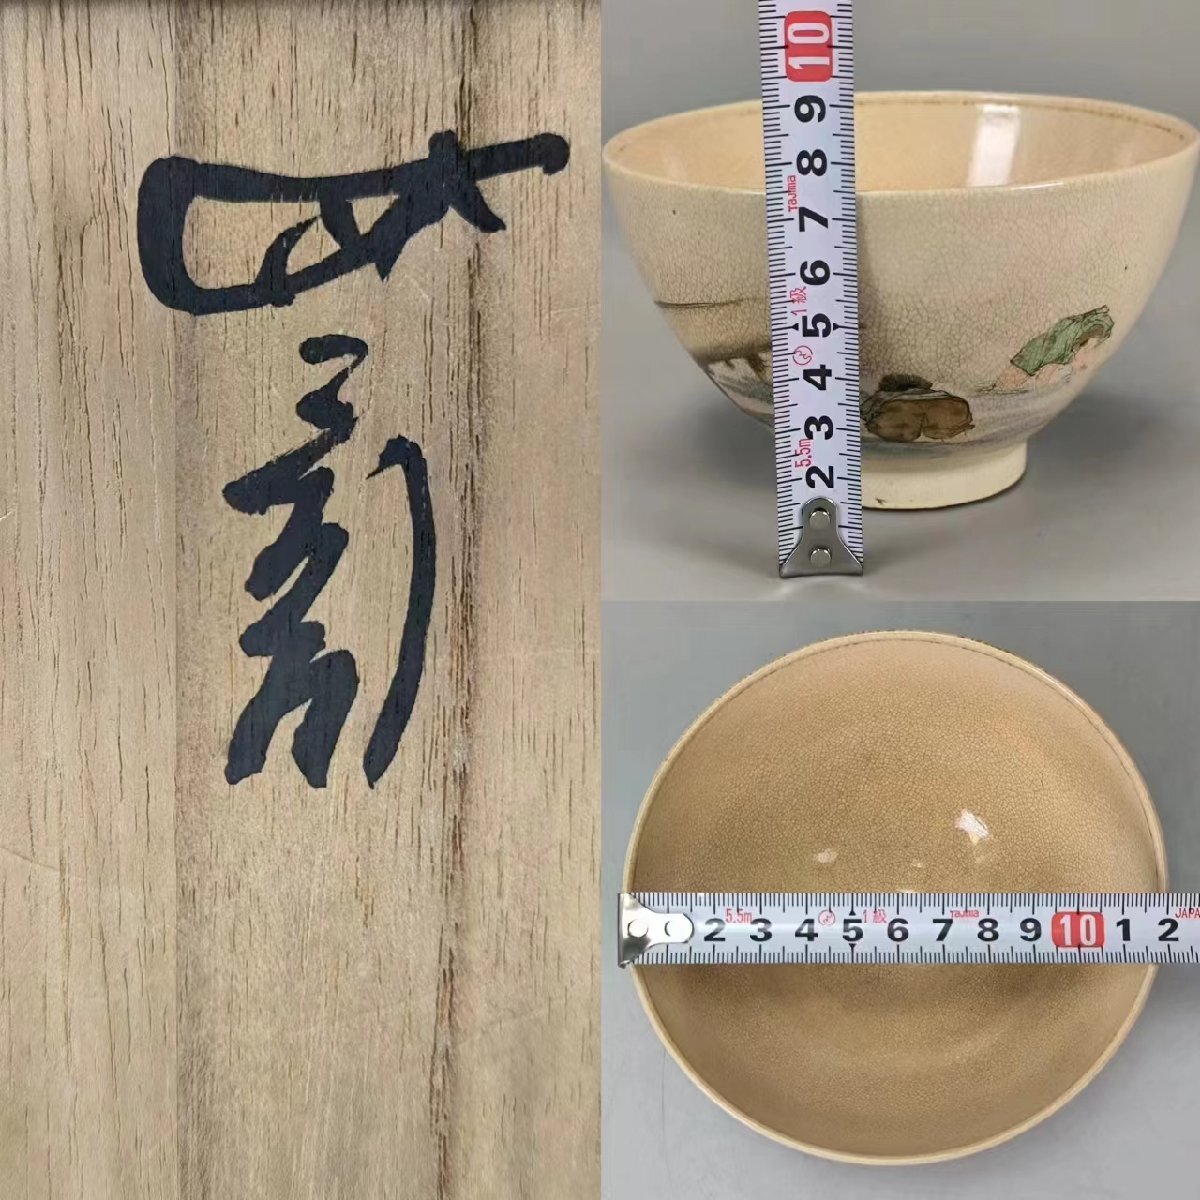 F0405A6 Edo первый период старый Satsuma чашка Urasenke 10 4 плата ... документ коробка цветная роспись персона . чайная посуда . чайная посуда . чайная посуда зеленый чай . с ящиком времена предмет 